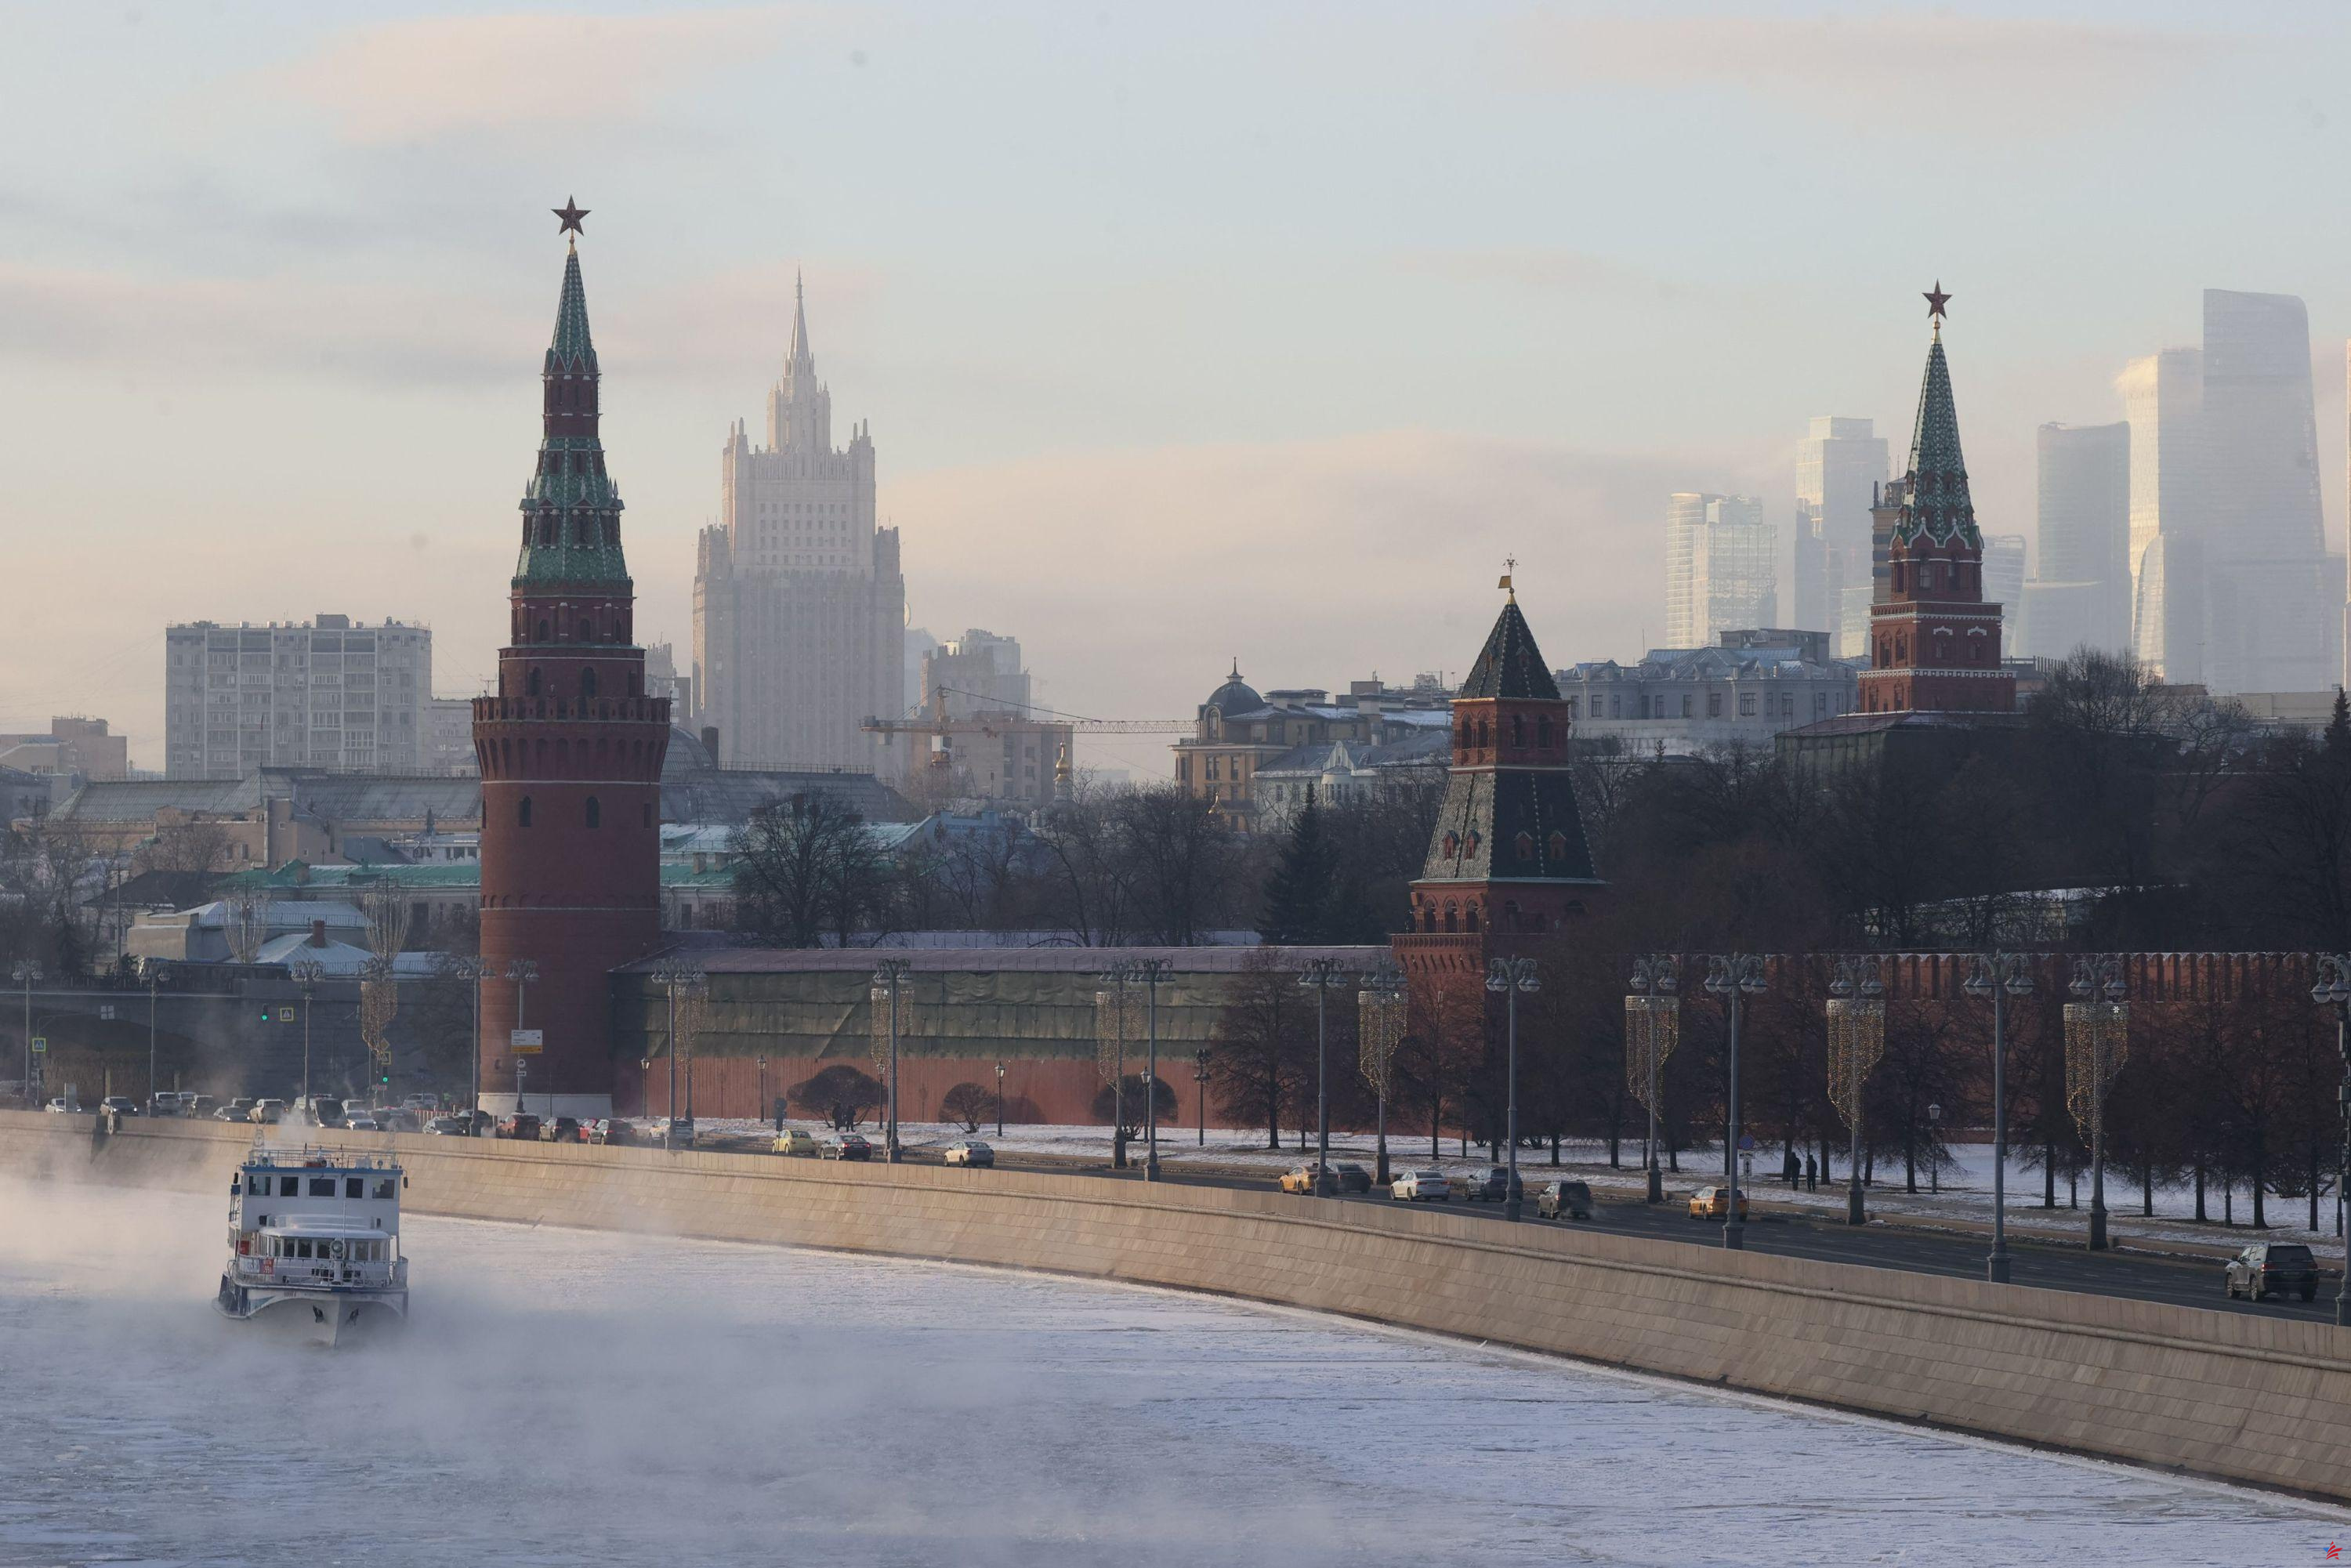 Rusia: mujeres movilizadas protestan bajo los muros del Kremlin